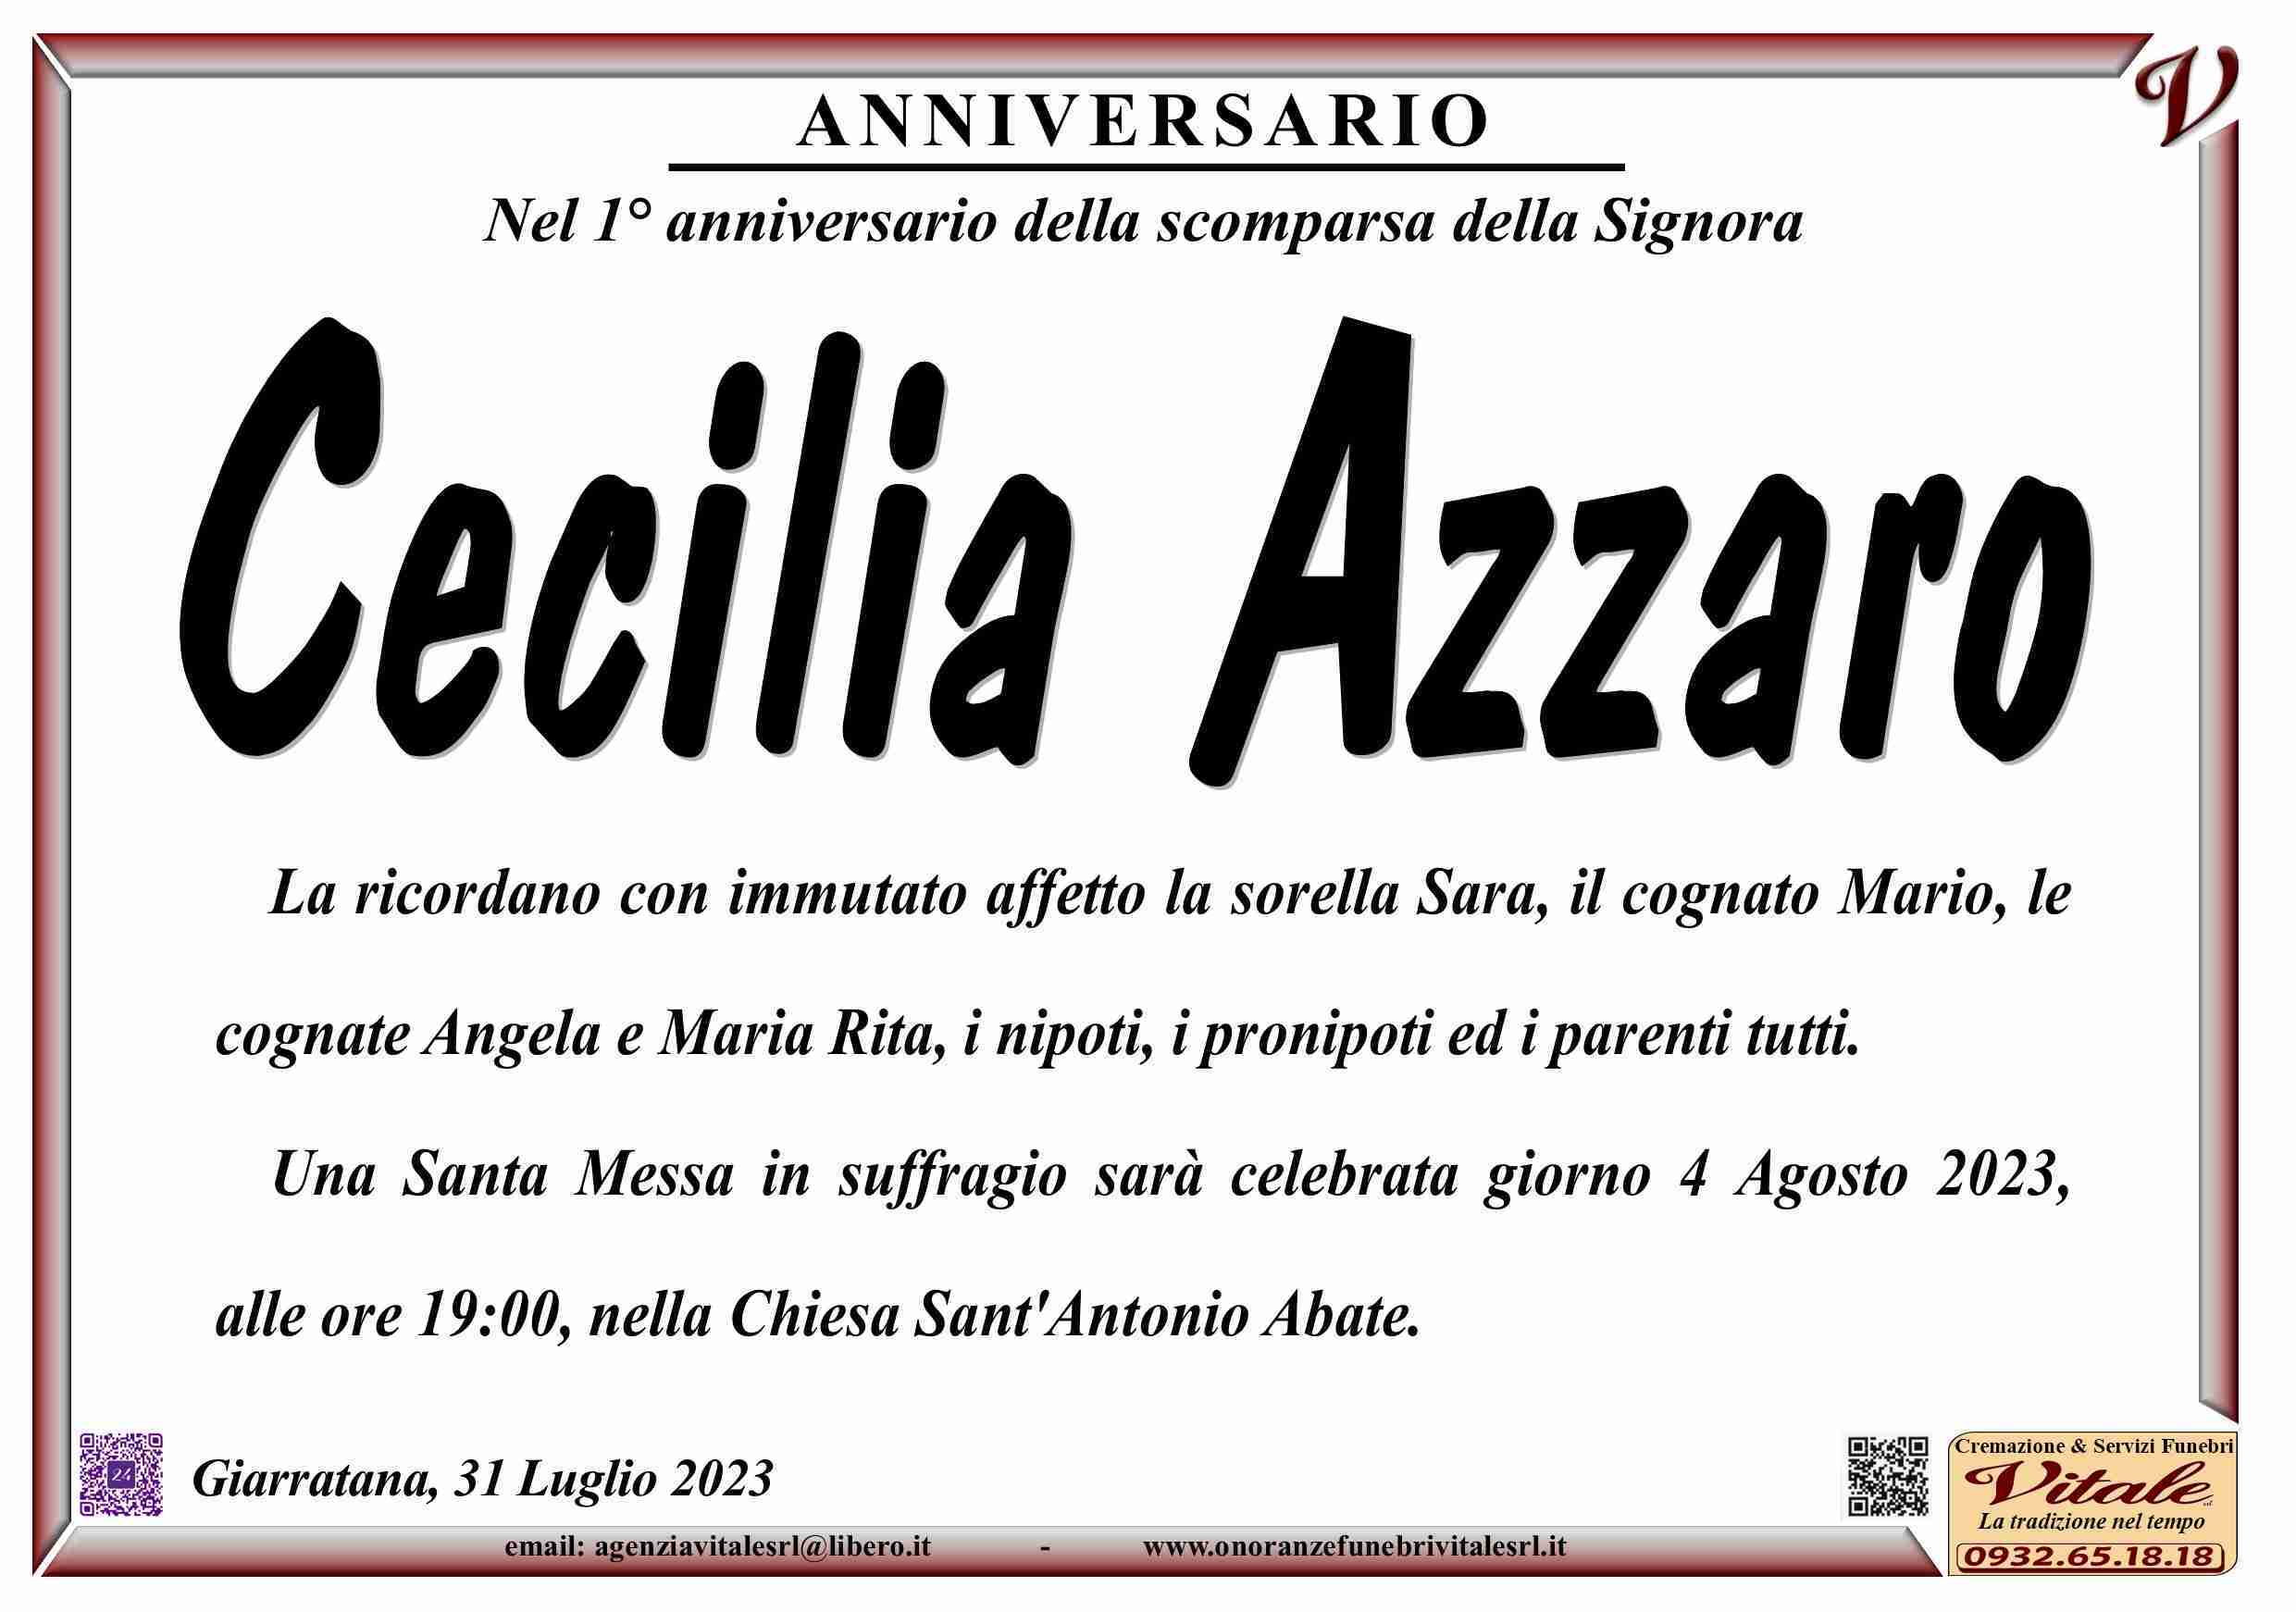 Cecilia Azzaro